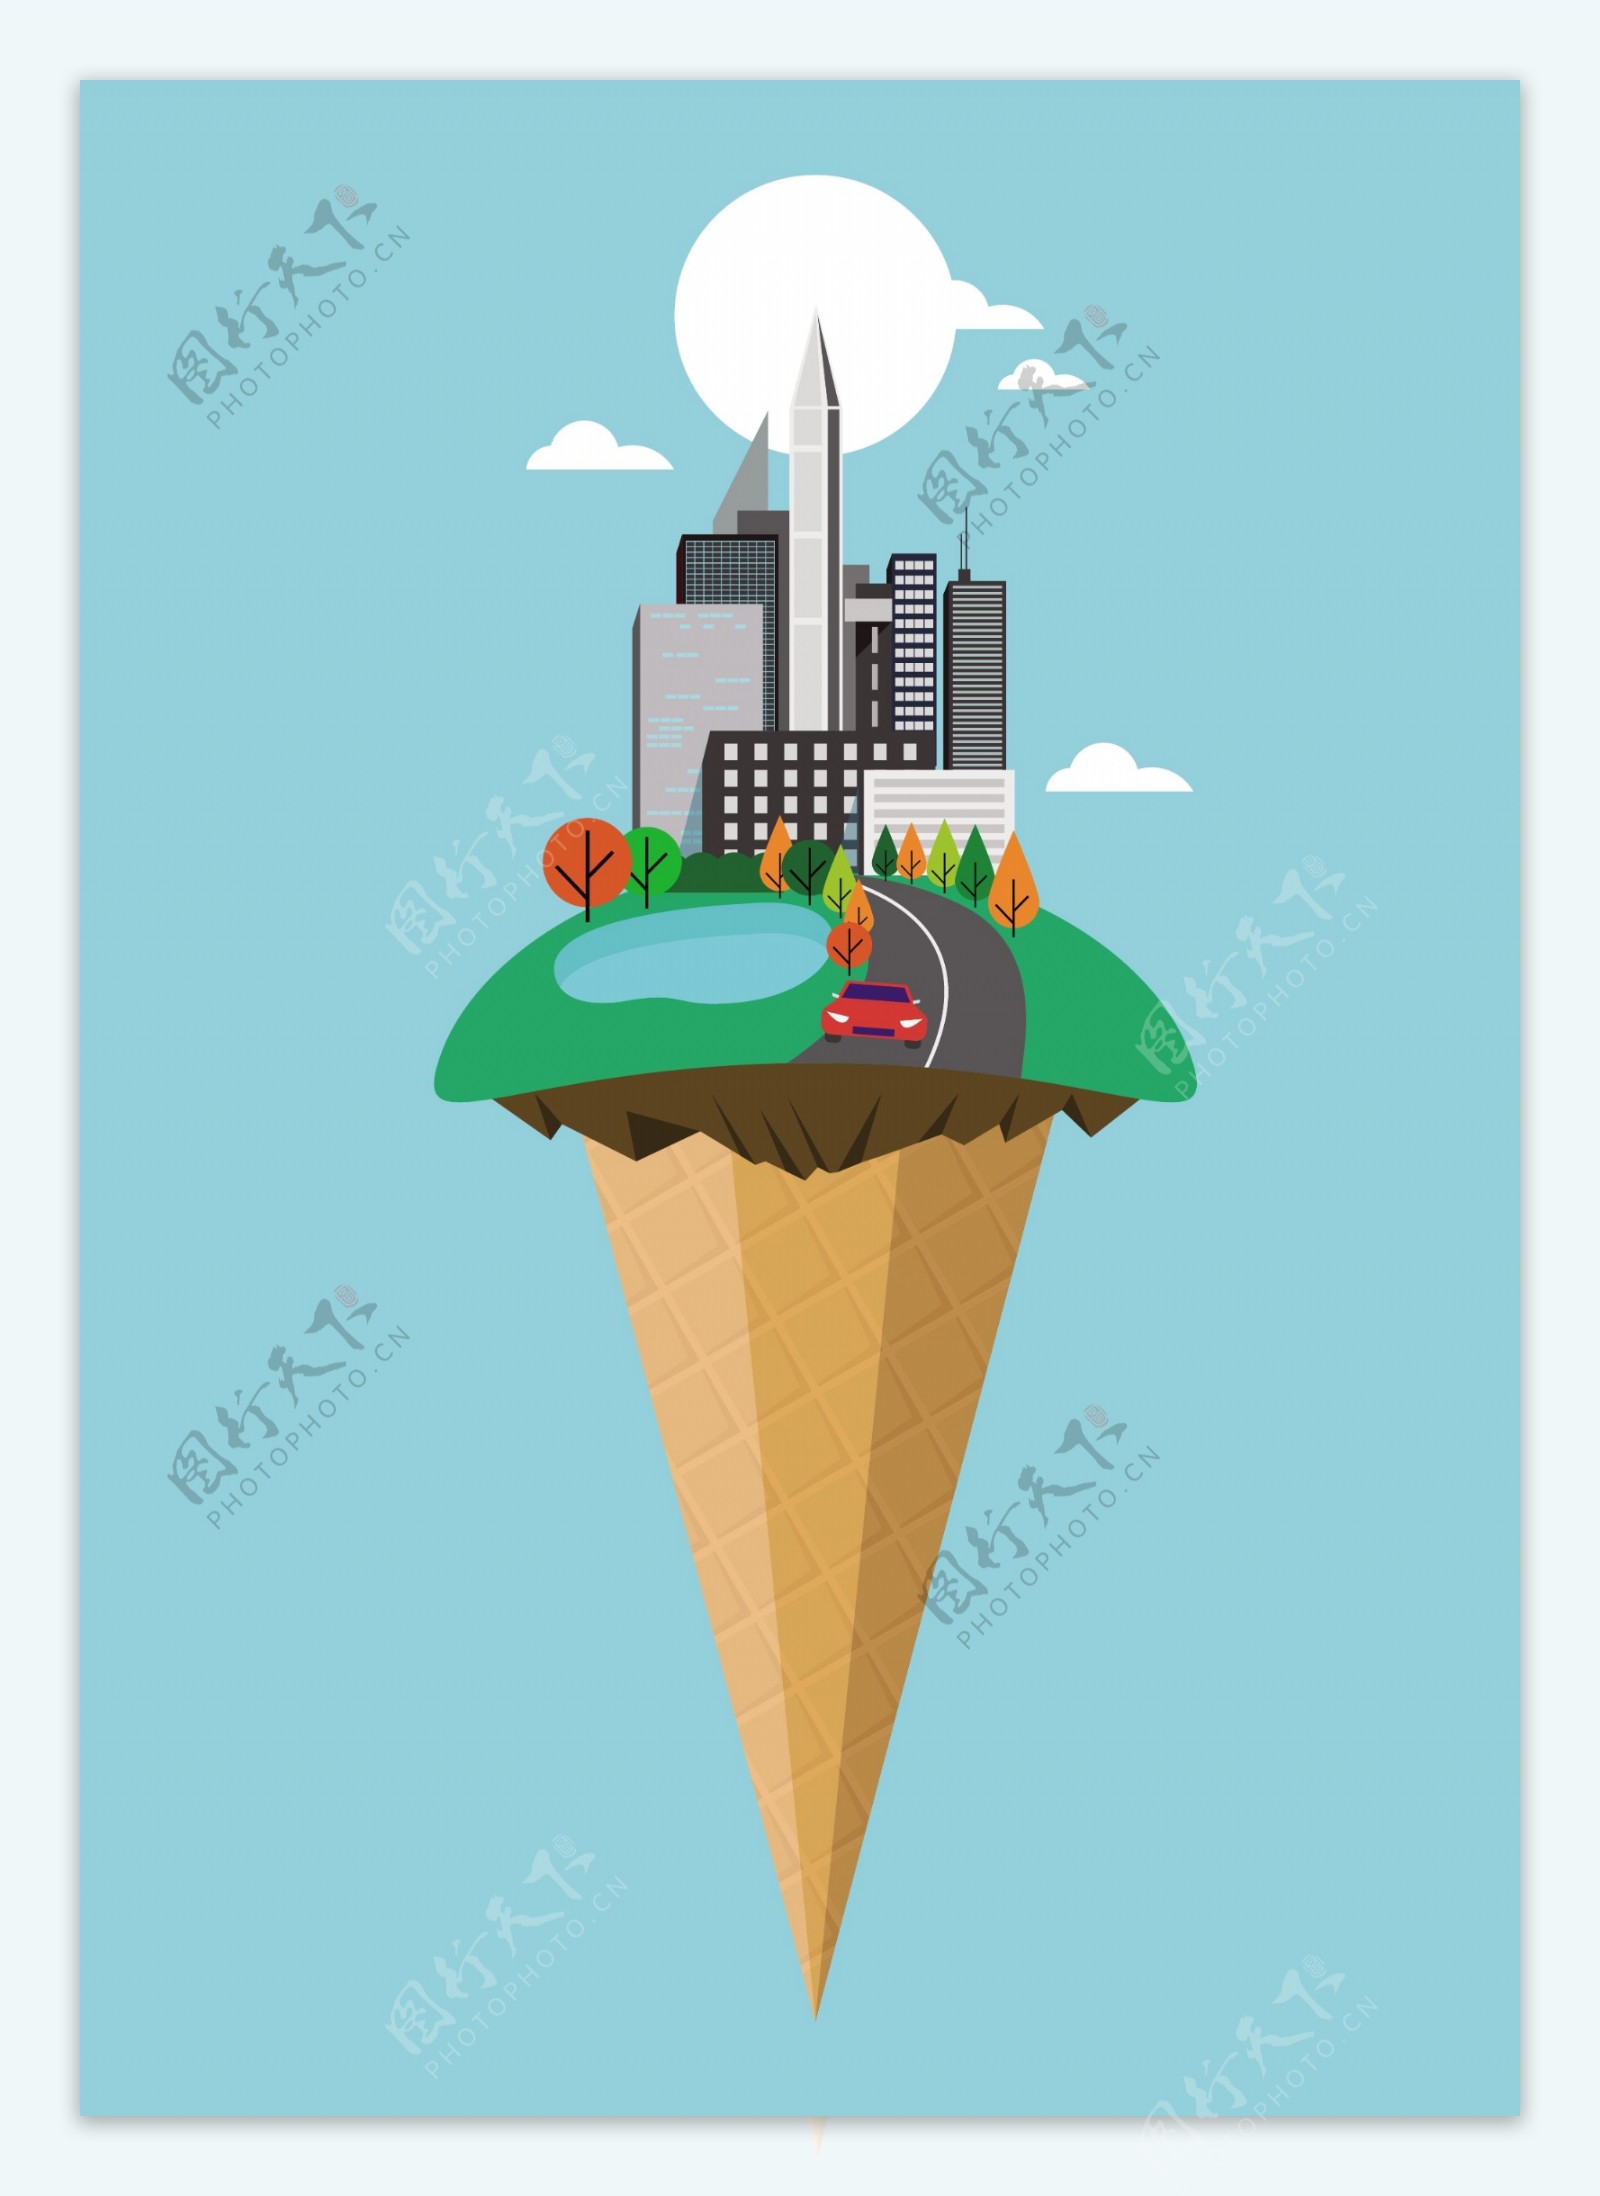 原创矢量插画城市晴天冰淇淋